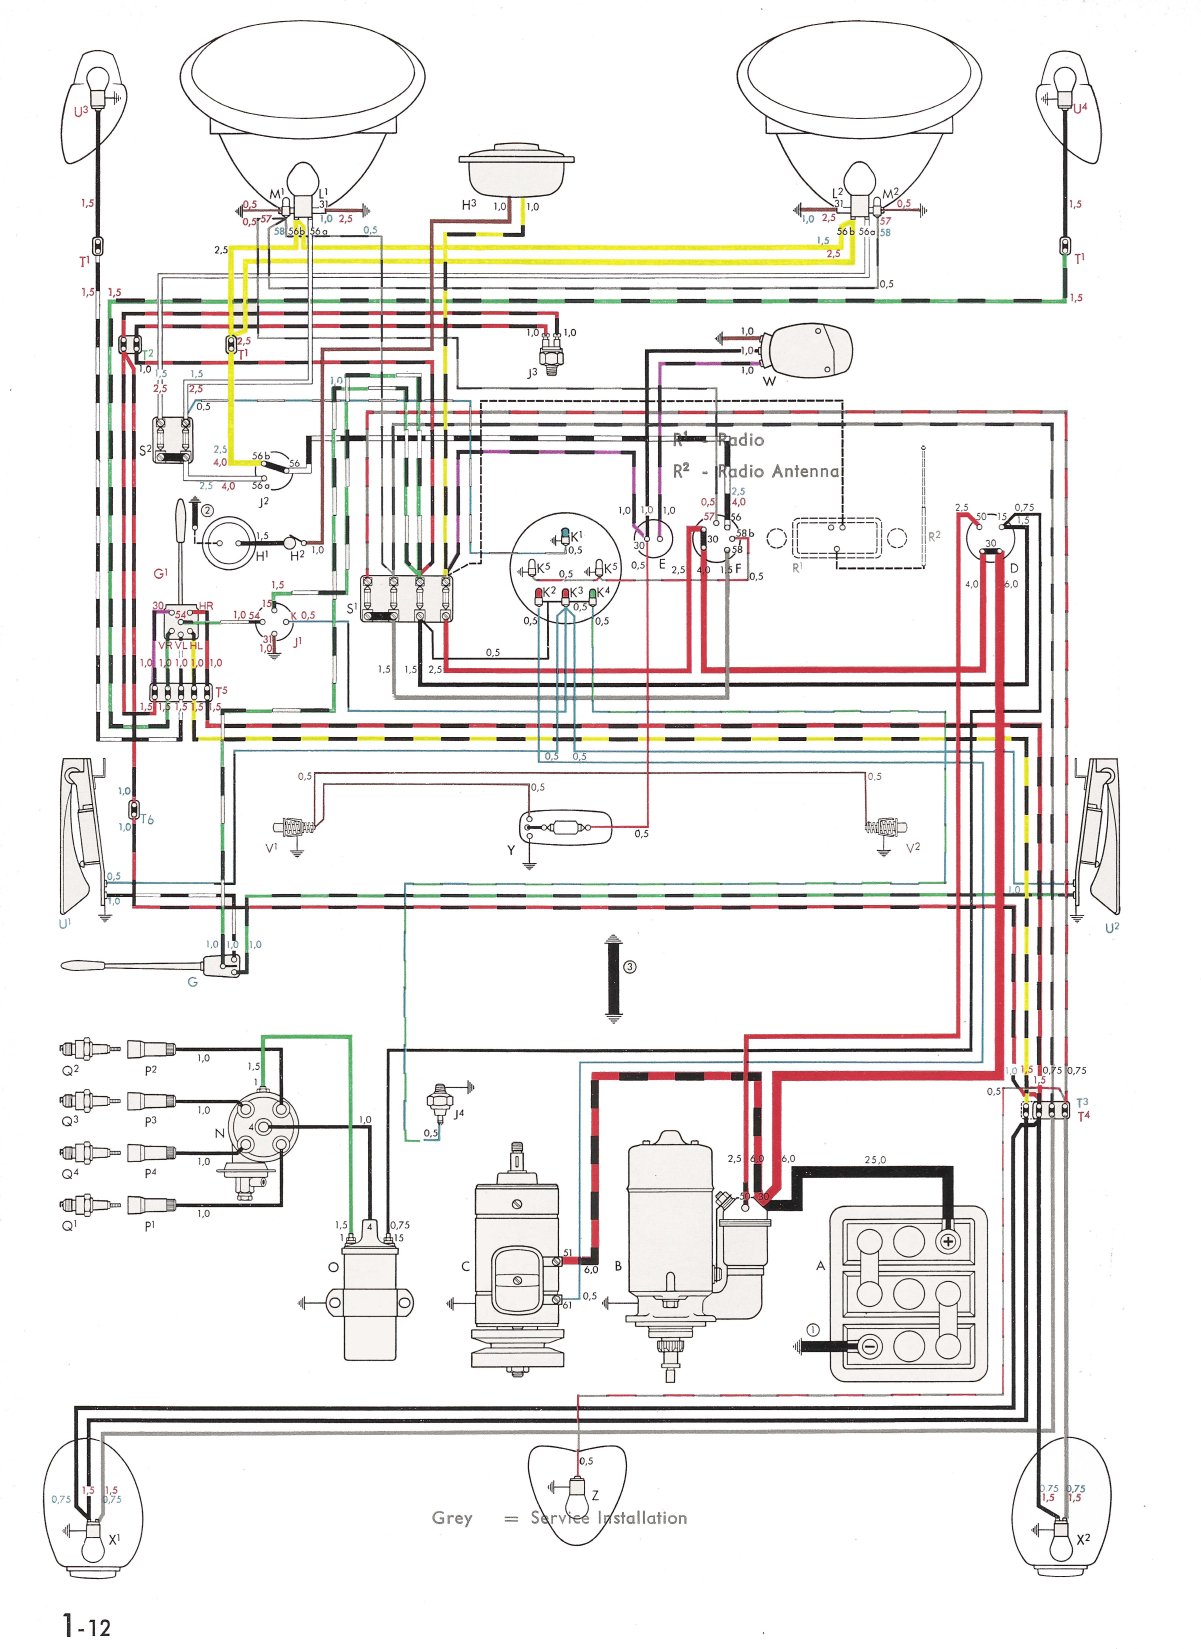 Vw Ignition Switch Wiring Diagram from www.thesamba.com